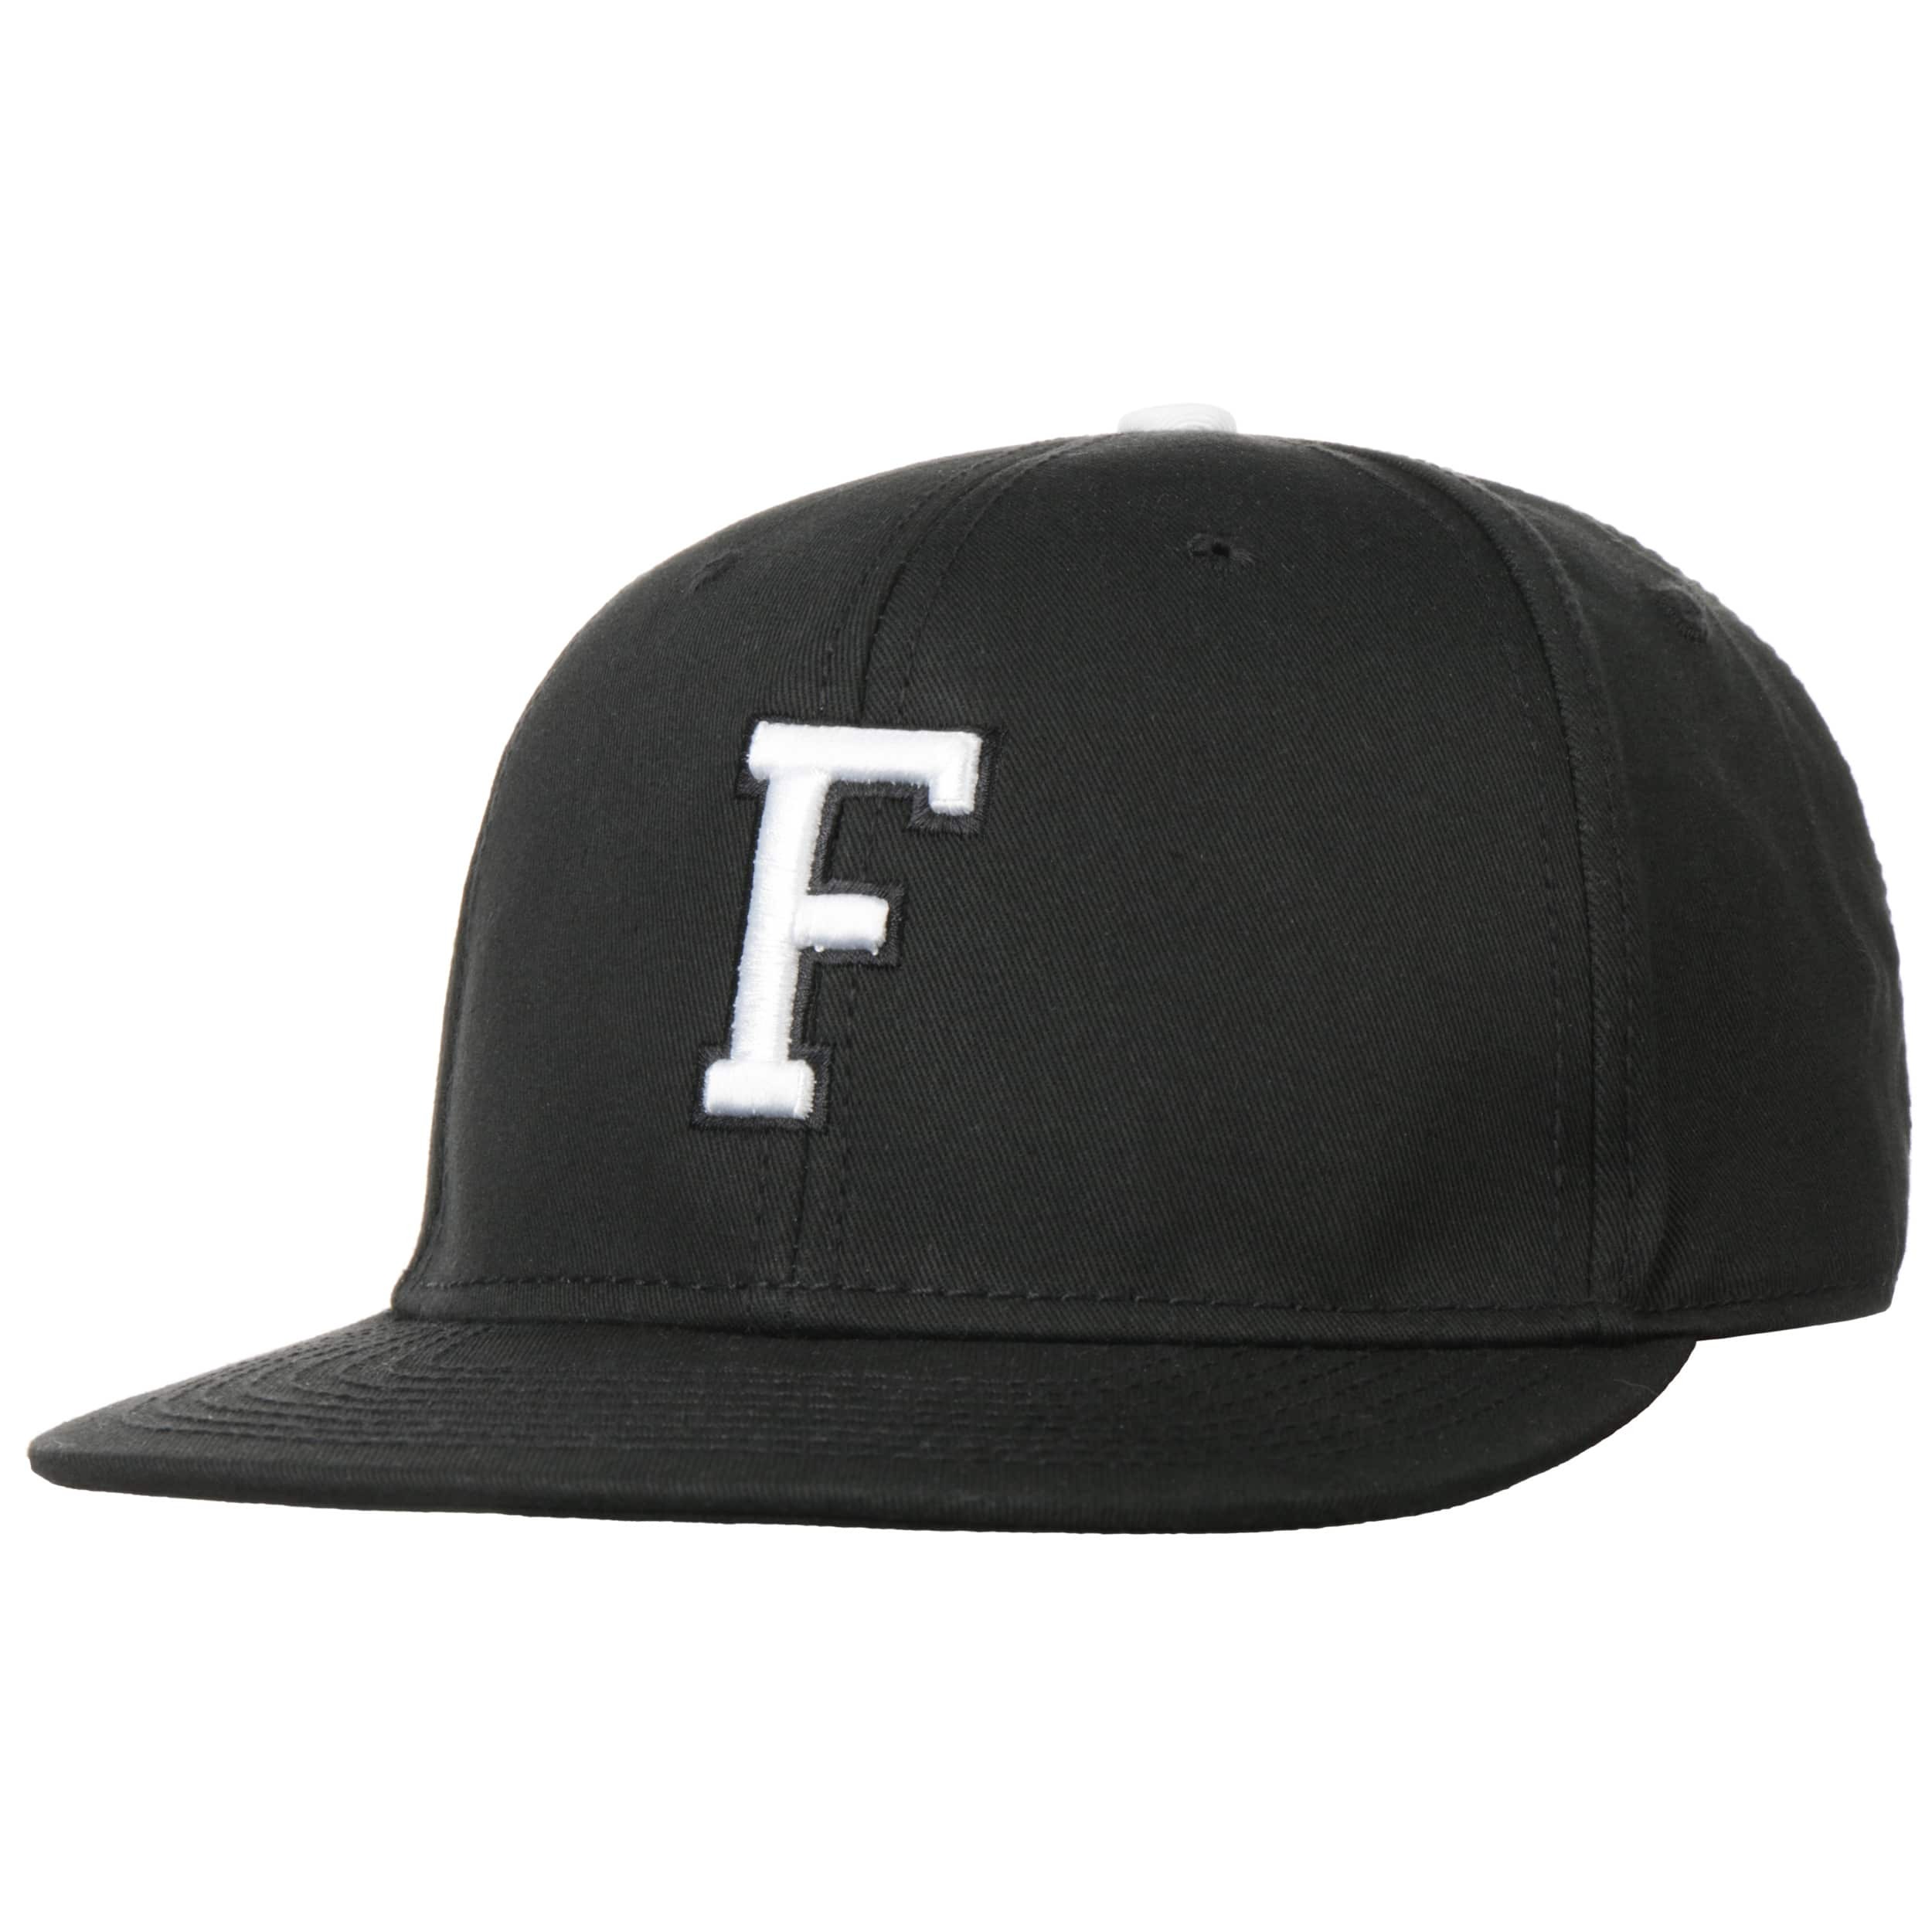 F Letter Snapback Cap, EUR 19,99 --> Hats, caps & beanies shop online ...